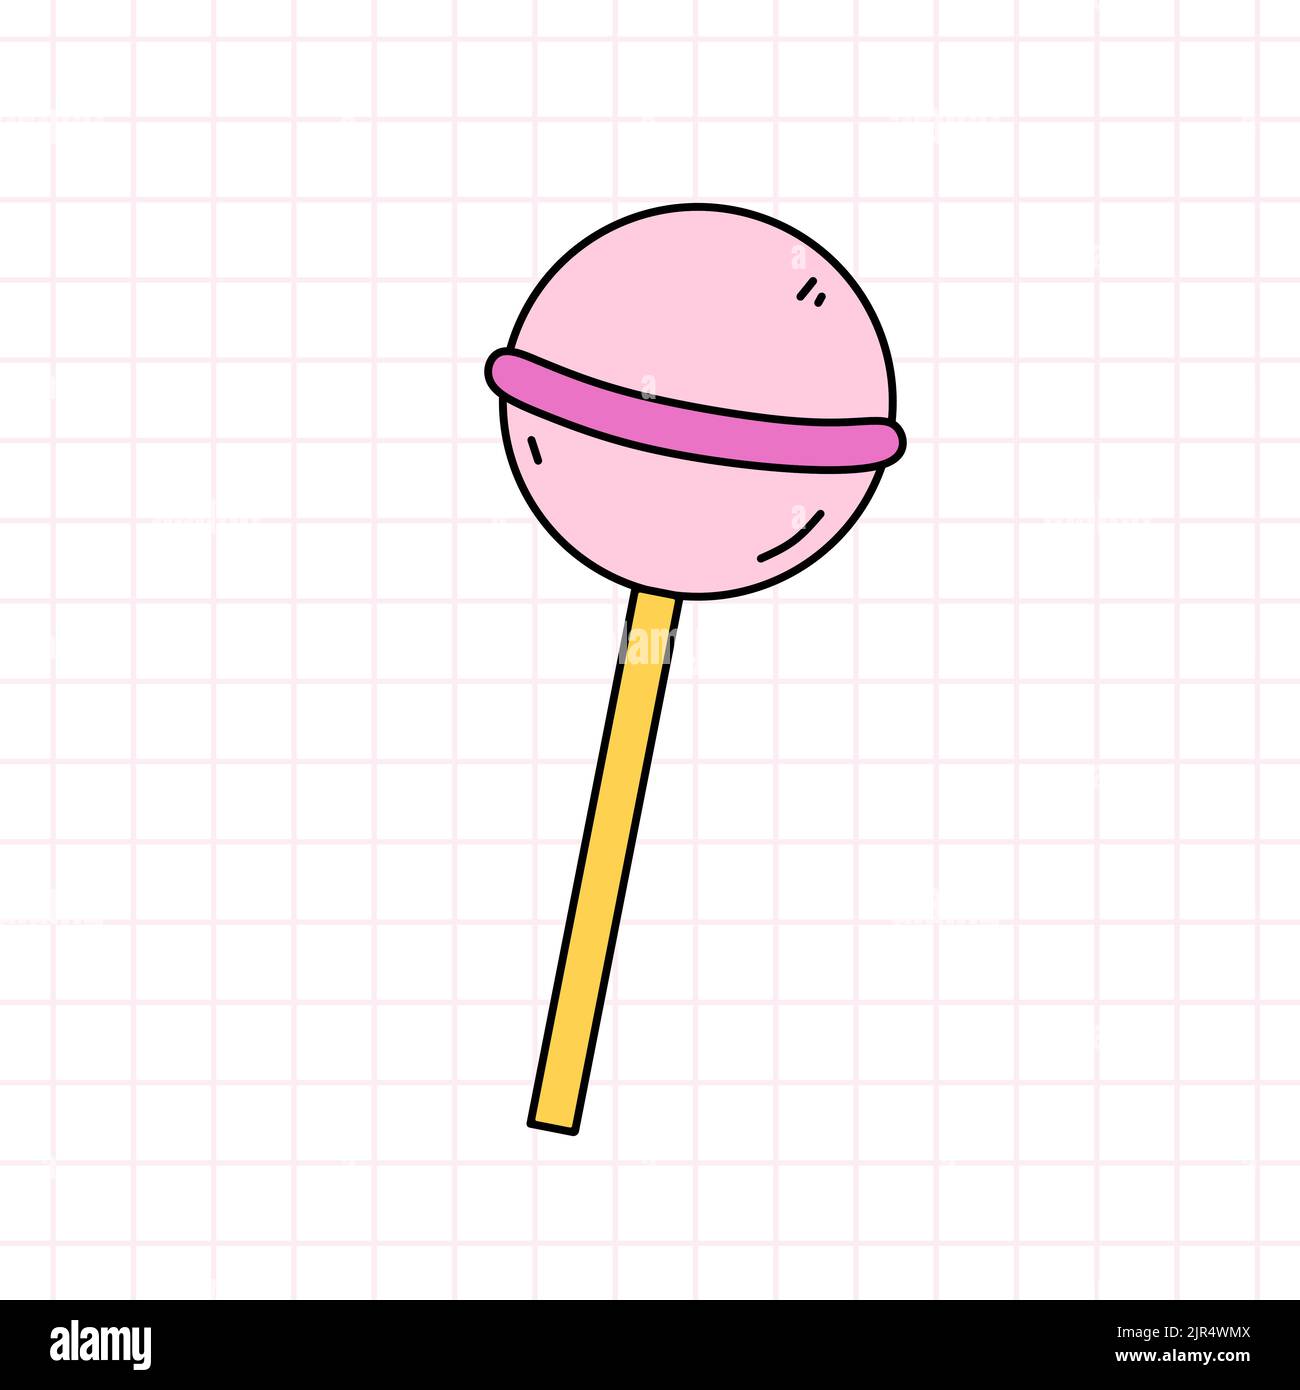 Lollipop rosa nello stile degli anni '90s. Caramelle dolci. Disegno vettoriale a mano di un doodle isolato su sfondo bianco. Nostalgia per il 1990s Illustrazione Vettoriale